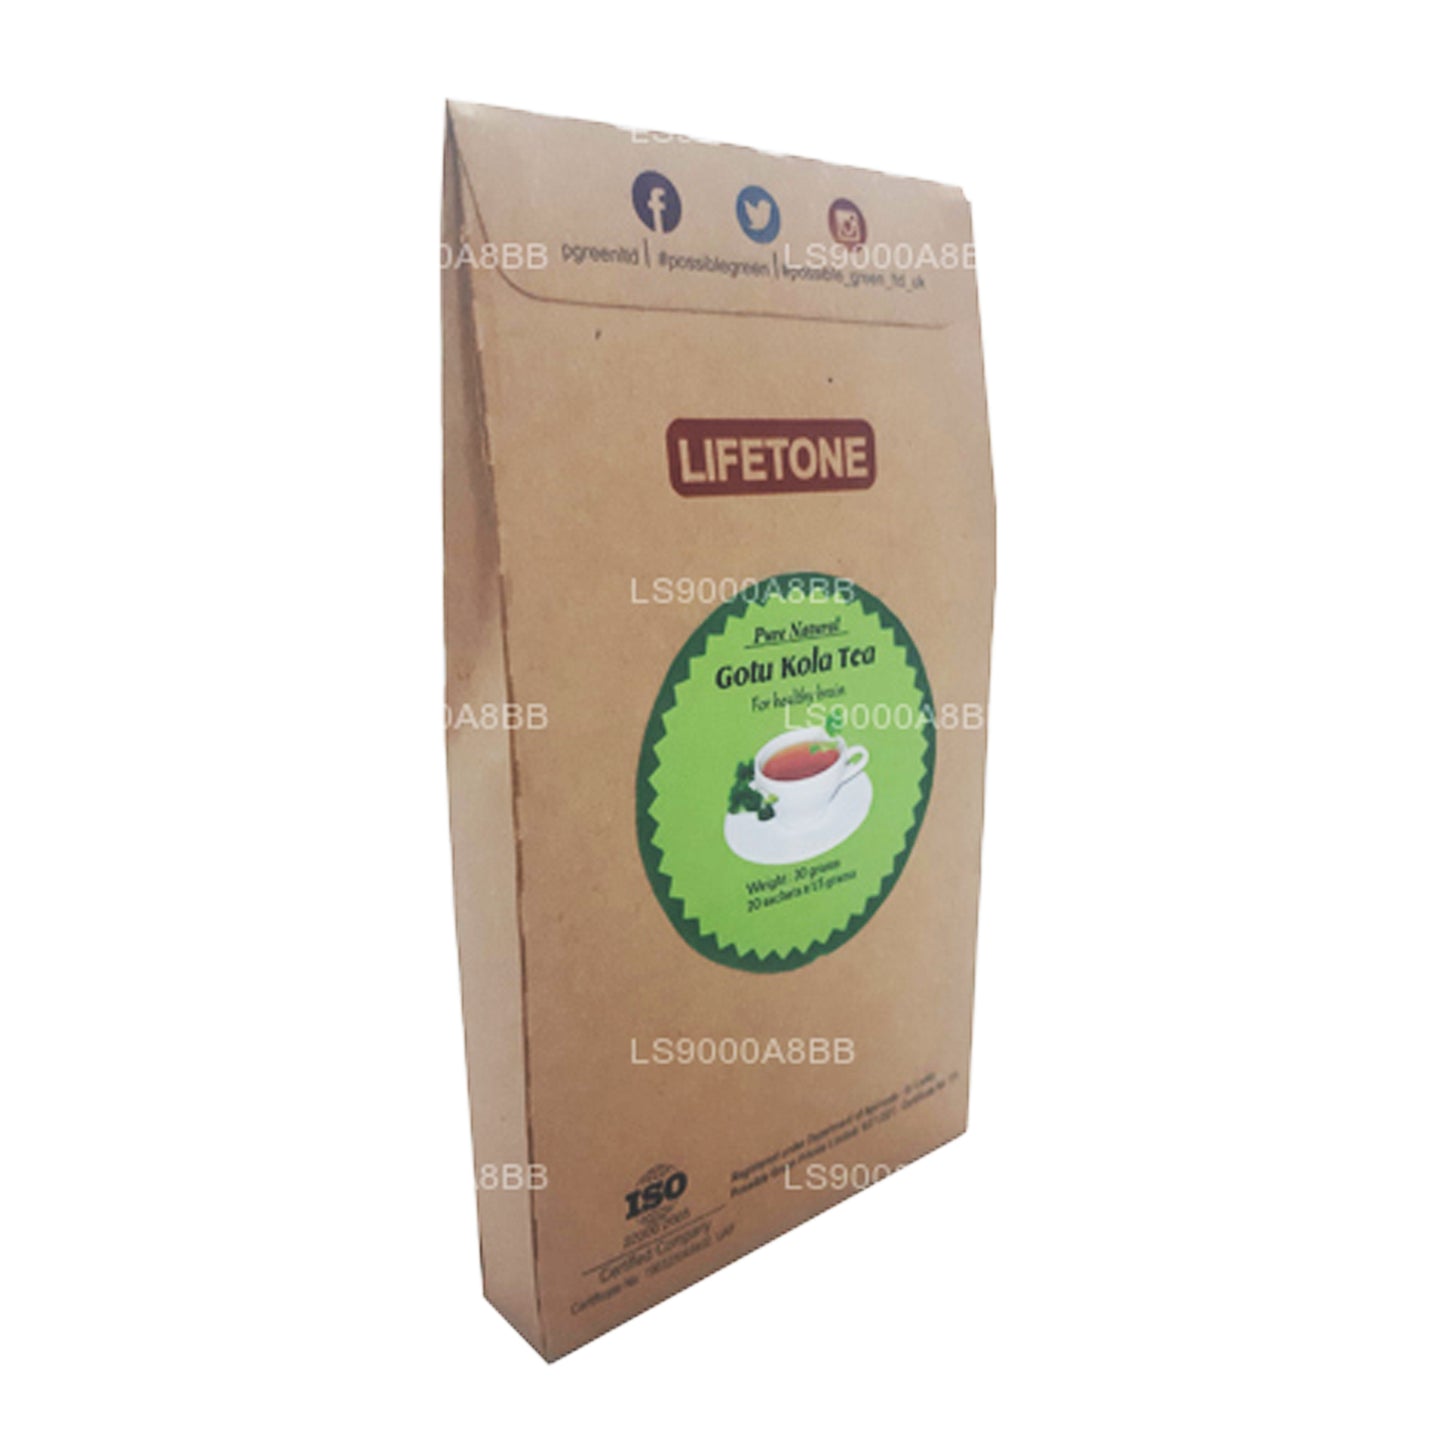 Lifetone Gotukola Tea (30g)